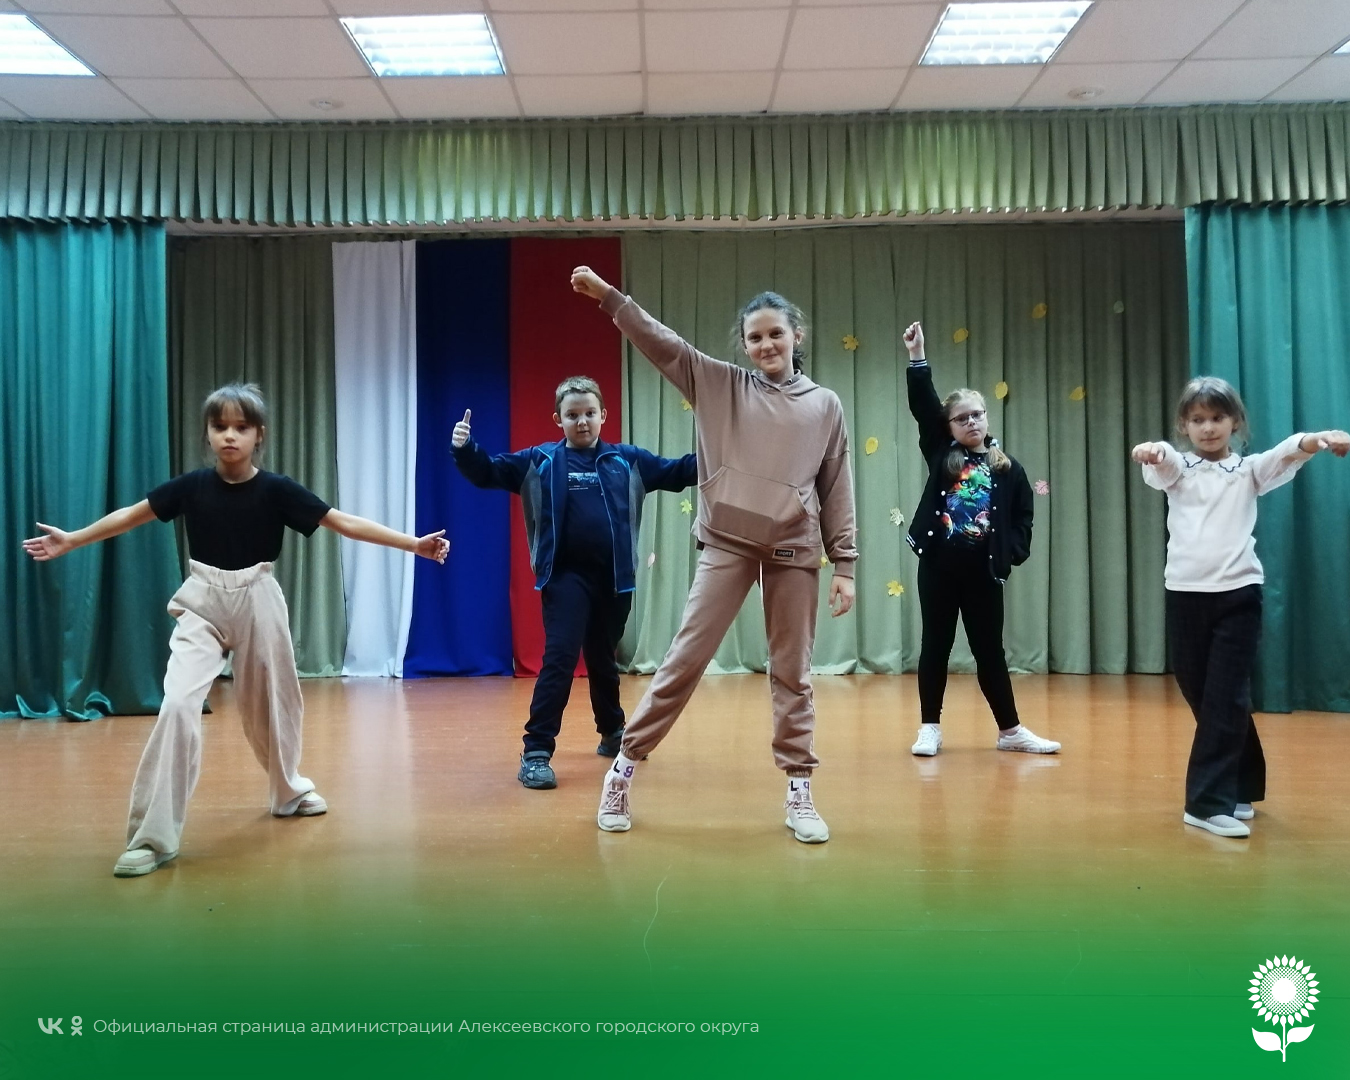 Музыкально – танцевальная программа «Будут песни, будут шутки, пляски, смех да прибаутки» состоялась  в Жуковском сельском Доме культуры.